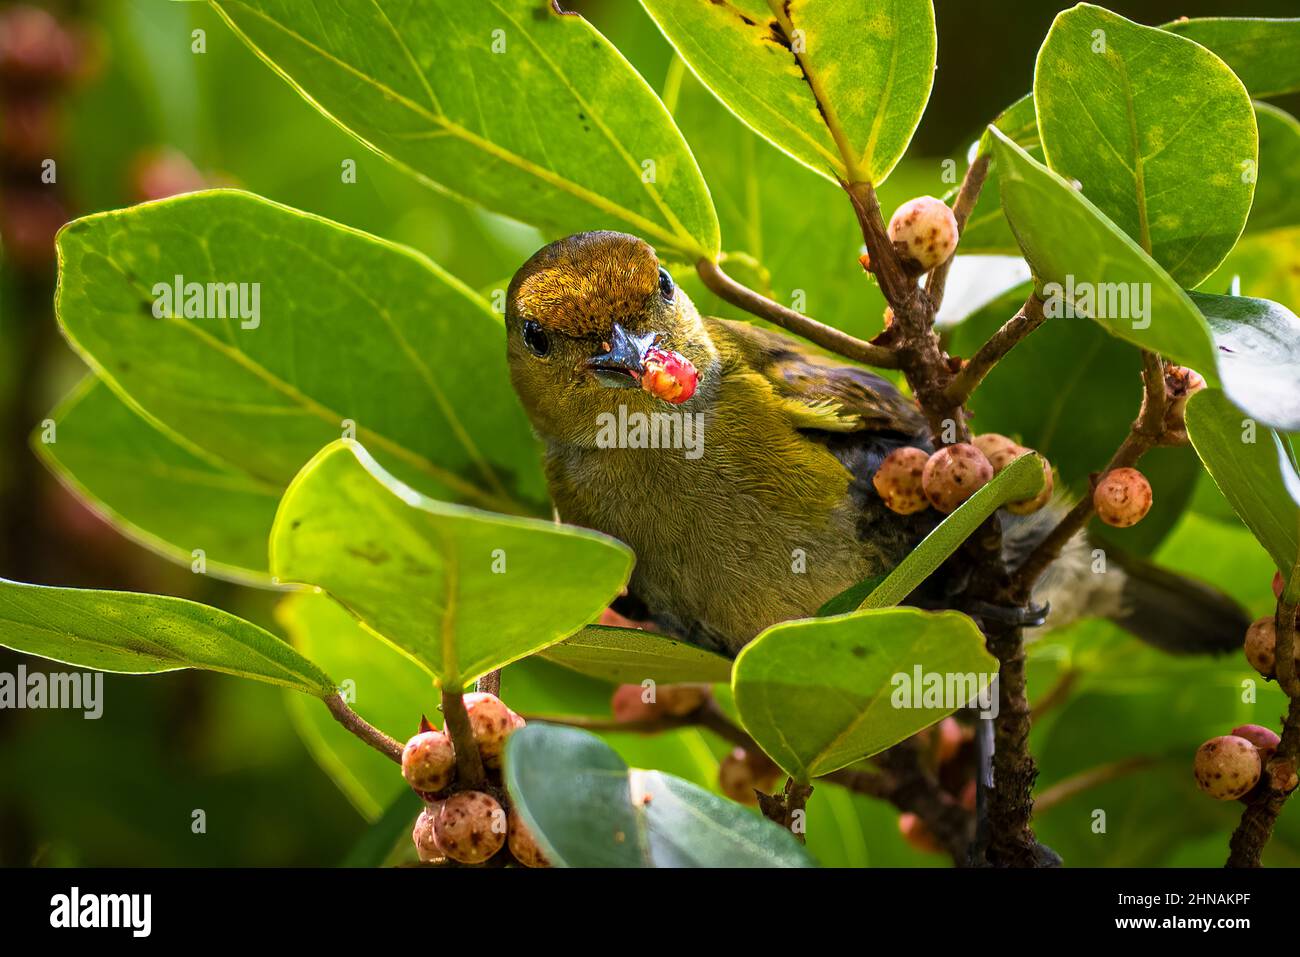 Aves tropicales pequeñas alimentando de una higuera estranguladora Foto de stock